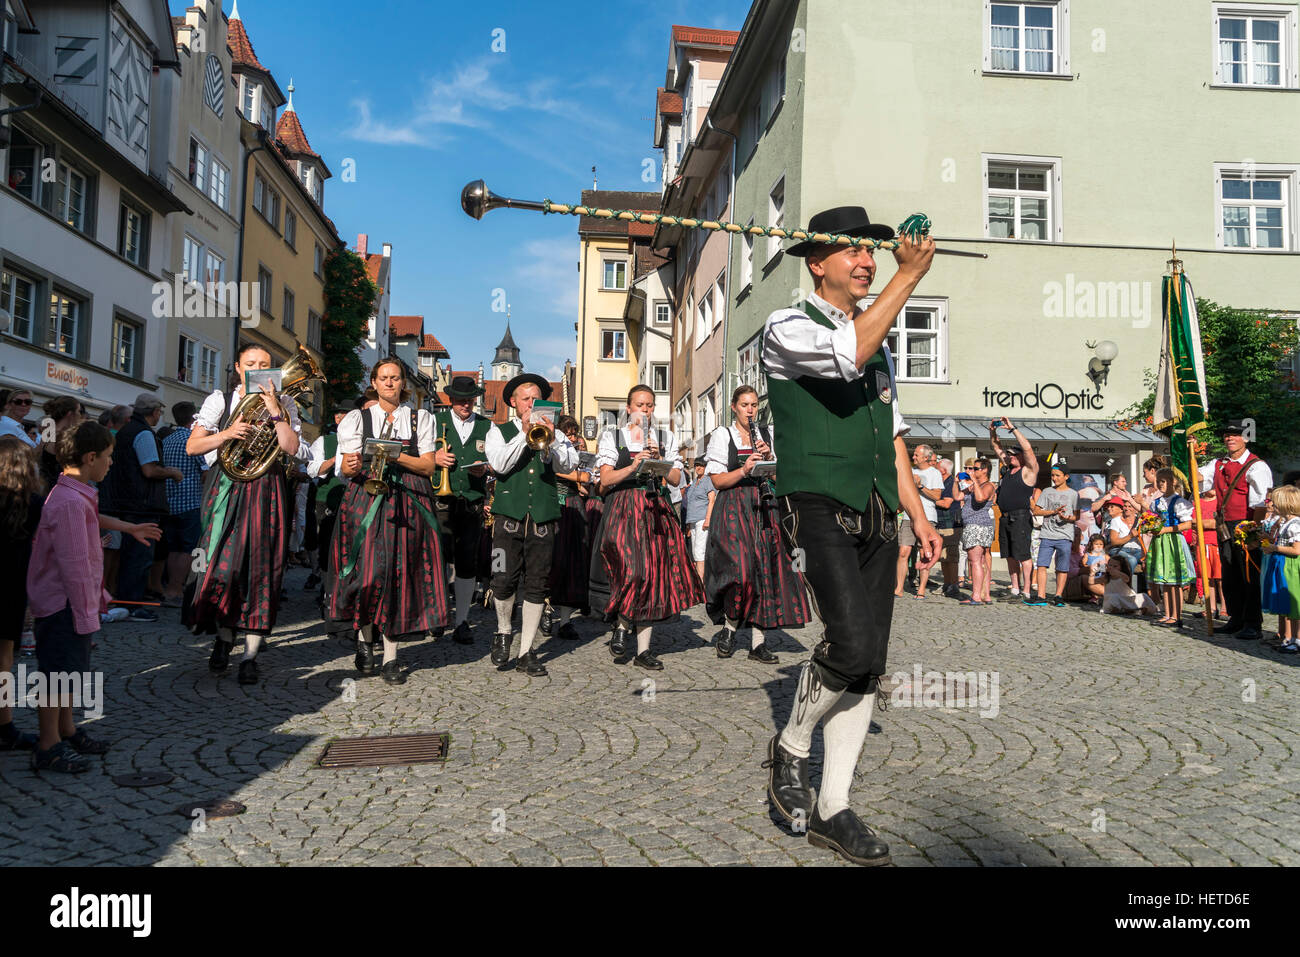 Parade avec groupe musical en costumes traditionnels, le lac de Constance, Lindau, Bavaria, Germany, Europe Banque D'Images